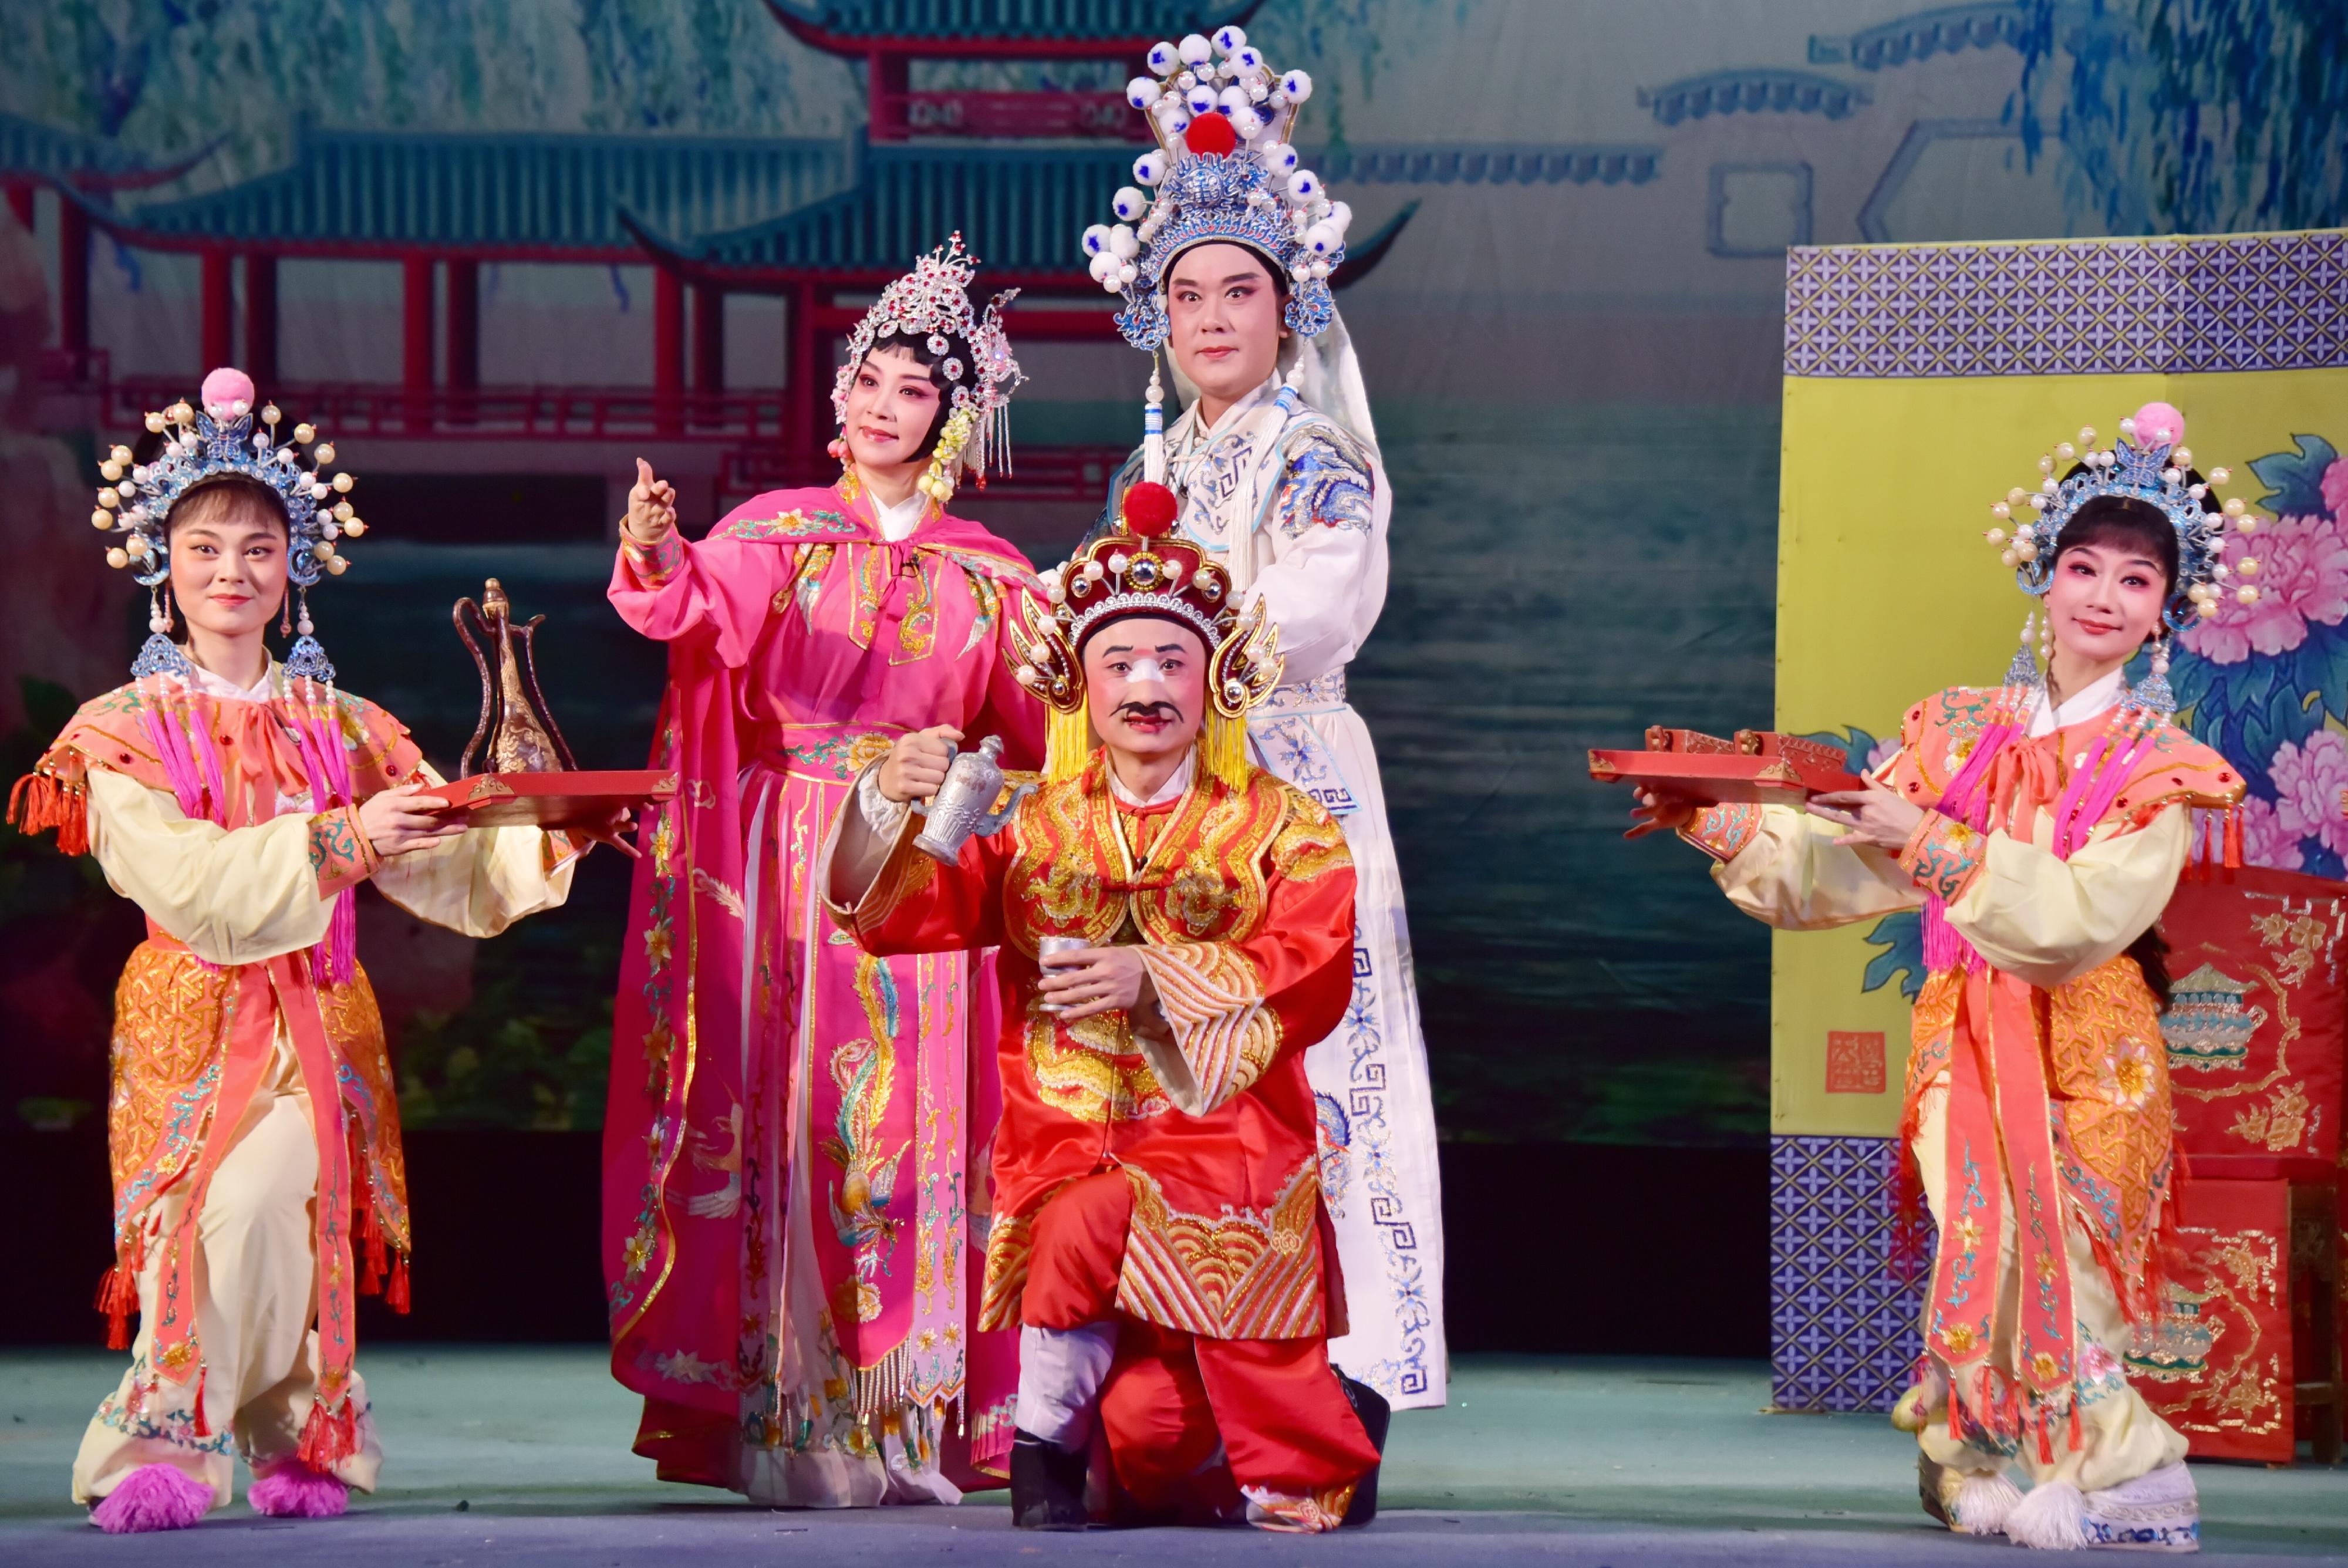 广东潮剧院一团与香港新韩江潮剧团再度携手，于首届「中华文化节」带来三场精彩潮剧。图示折子戏《穆桂英招亲》剧照。